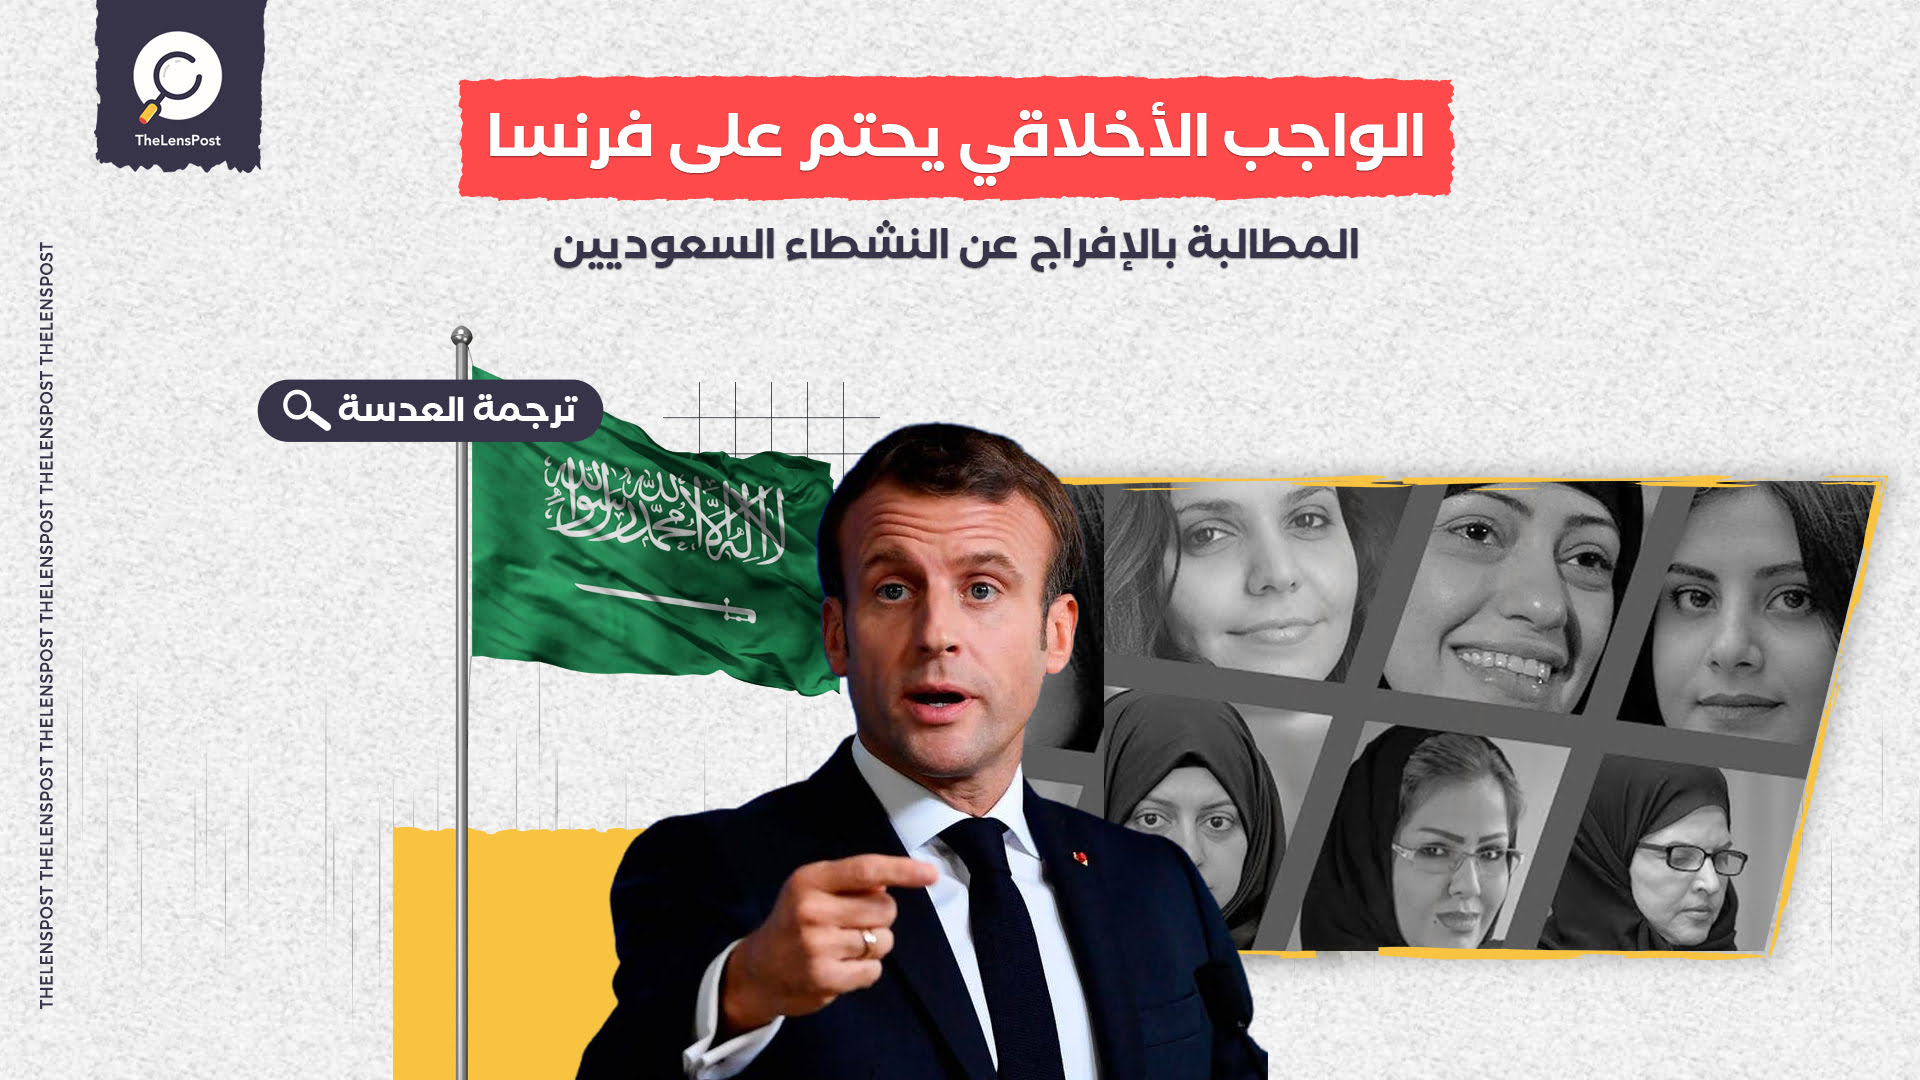 دو ديمونش: الواجب الأخلاقي يحتم على فرنسا المطالبة بالإفراج عن النشطاء السعودي